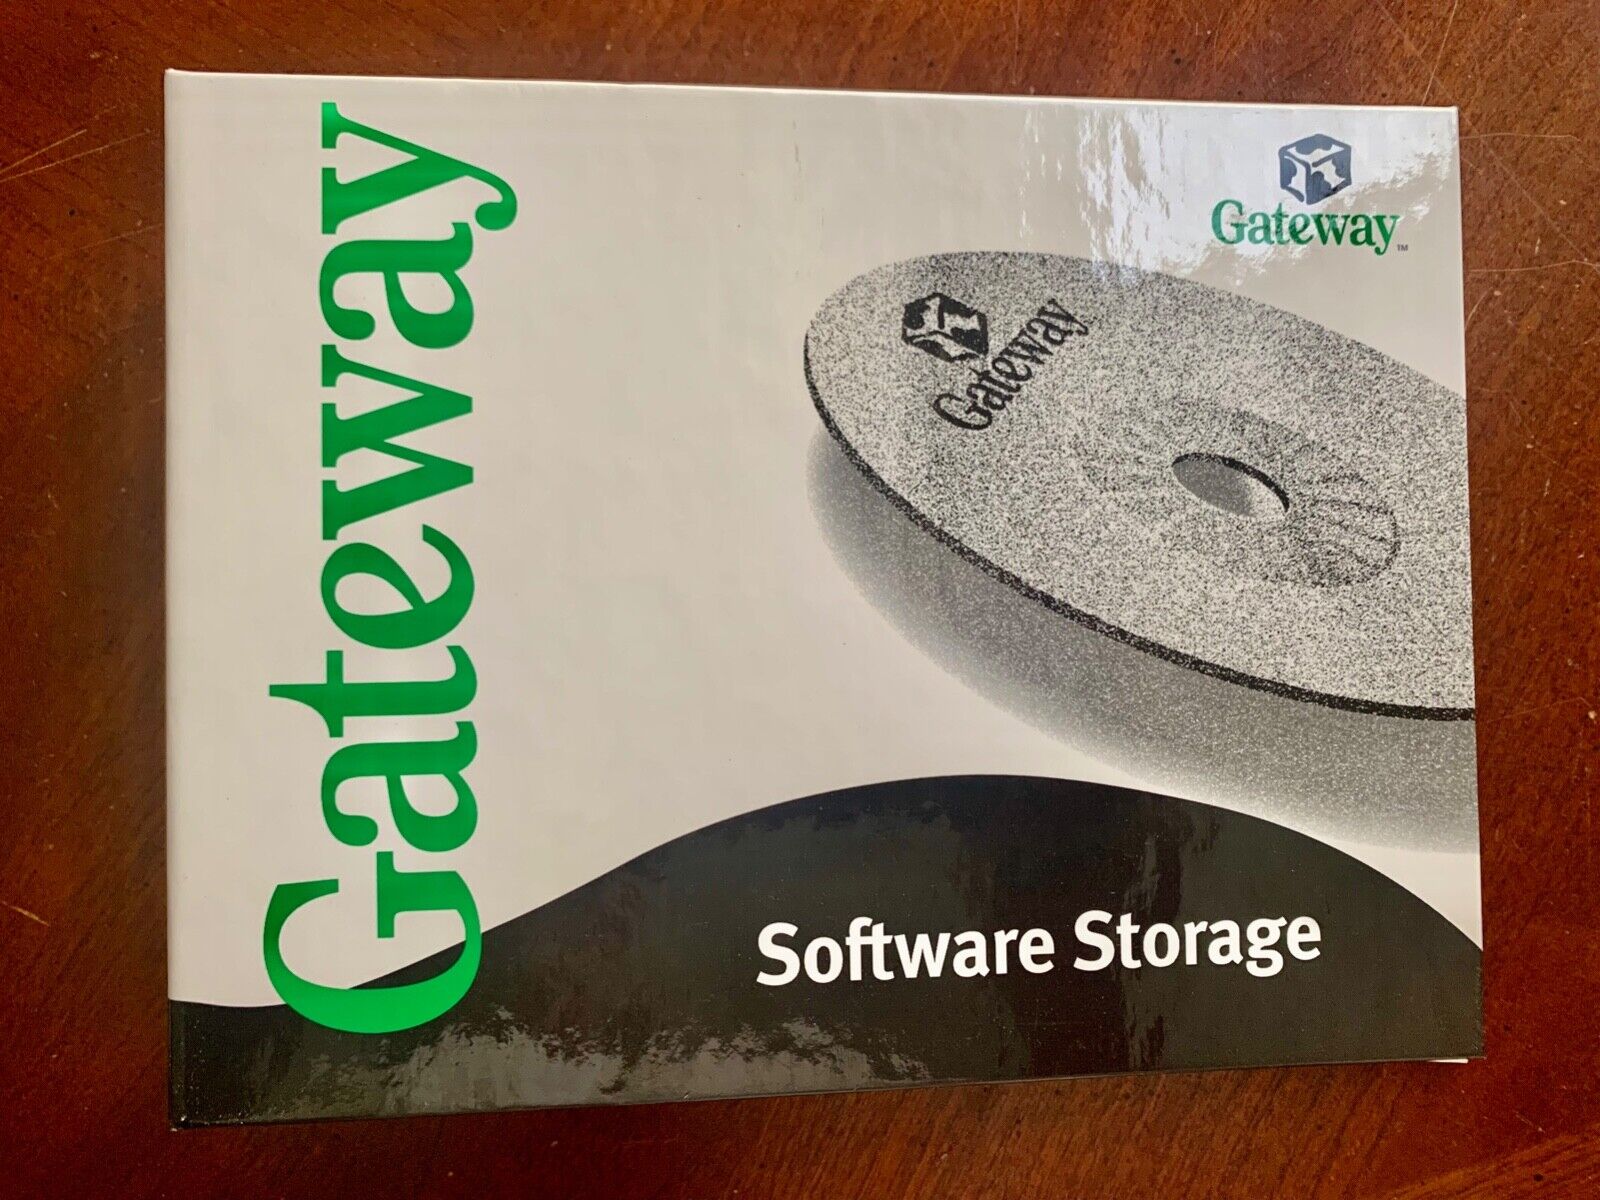 Gateway 2000  Software Storage Binder Clean Bright - 2 Ring Binder VTG